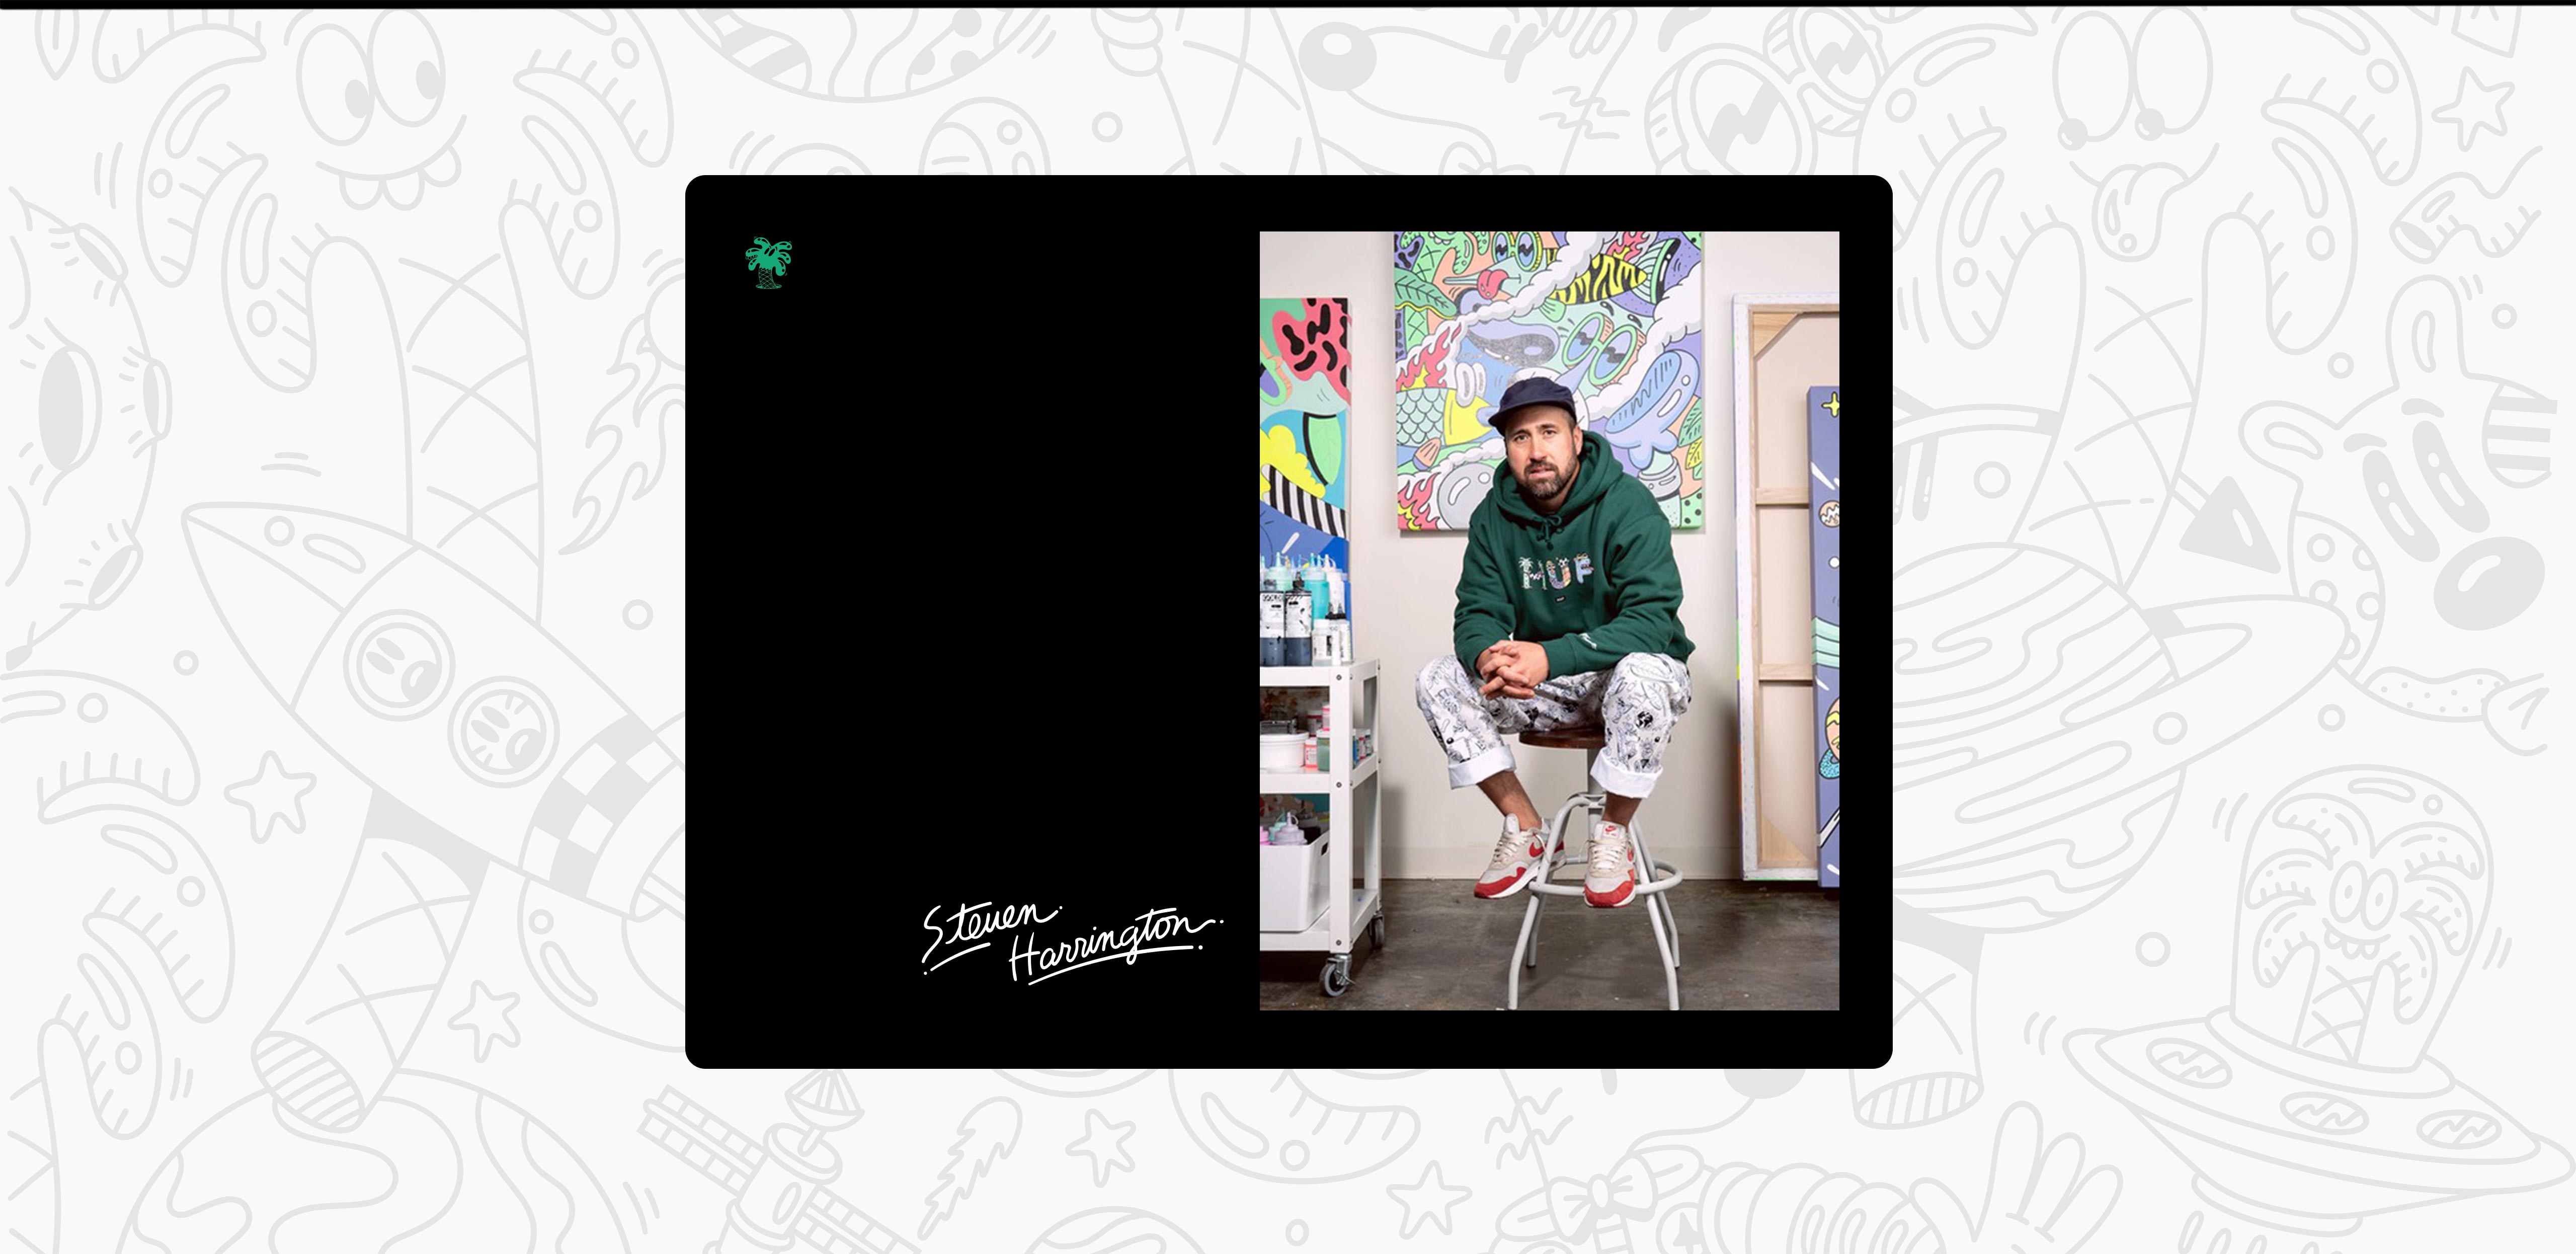 Steven Harrington fotografado com um casaco de capuz verde. Está sentado num banco em frente a uma das suas obras de arte.